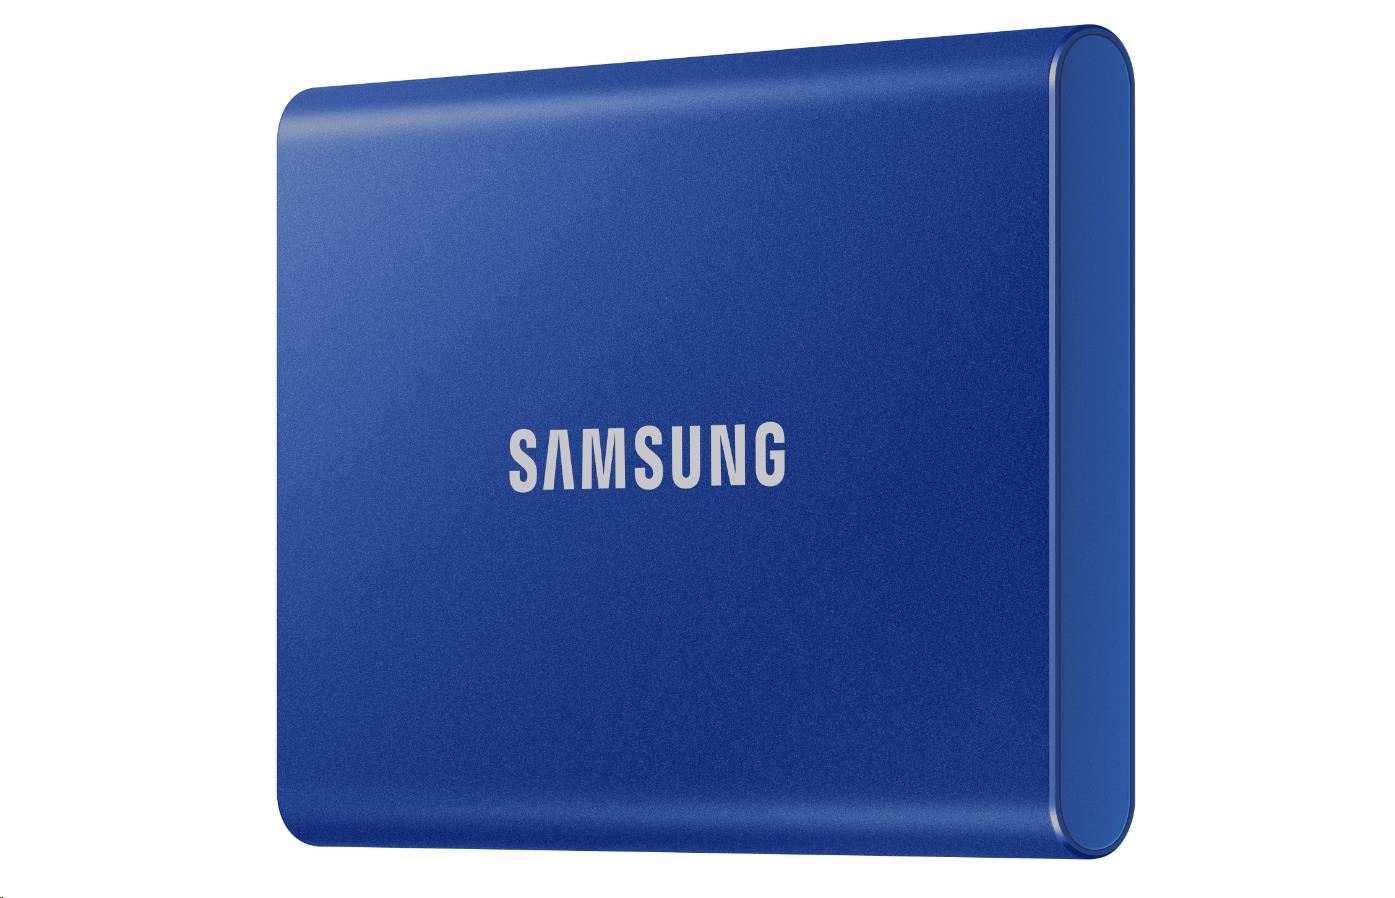 Externý disk SSD Samsung - 1 TB - modrý2 